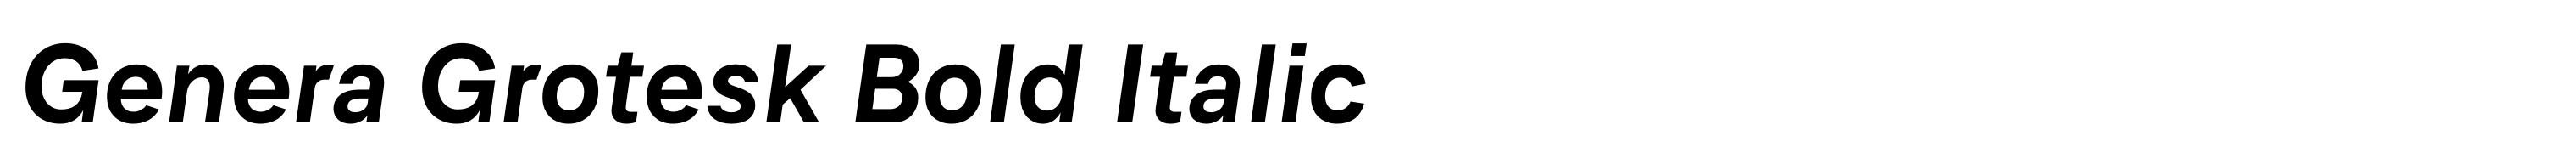 Genera Grotesk Bold Italic